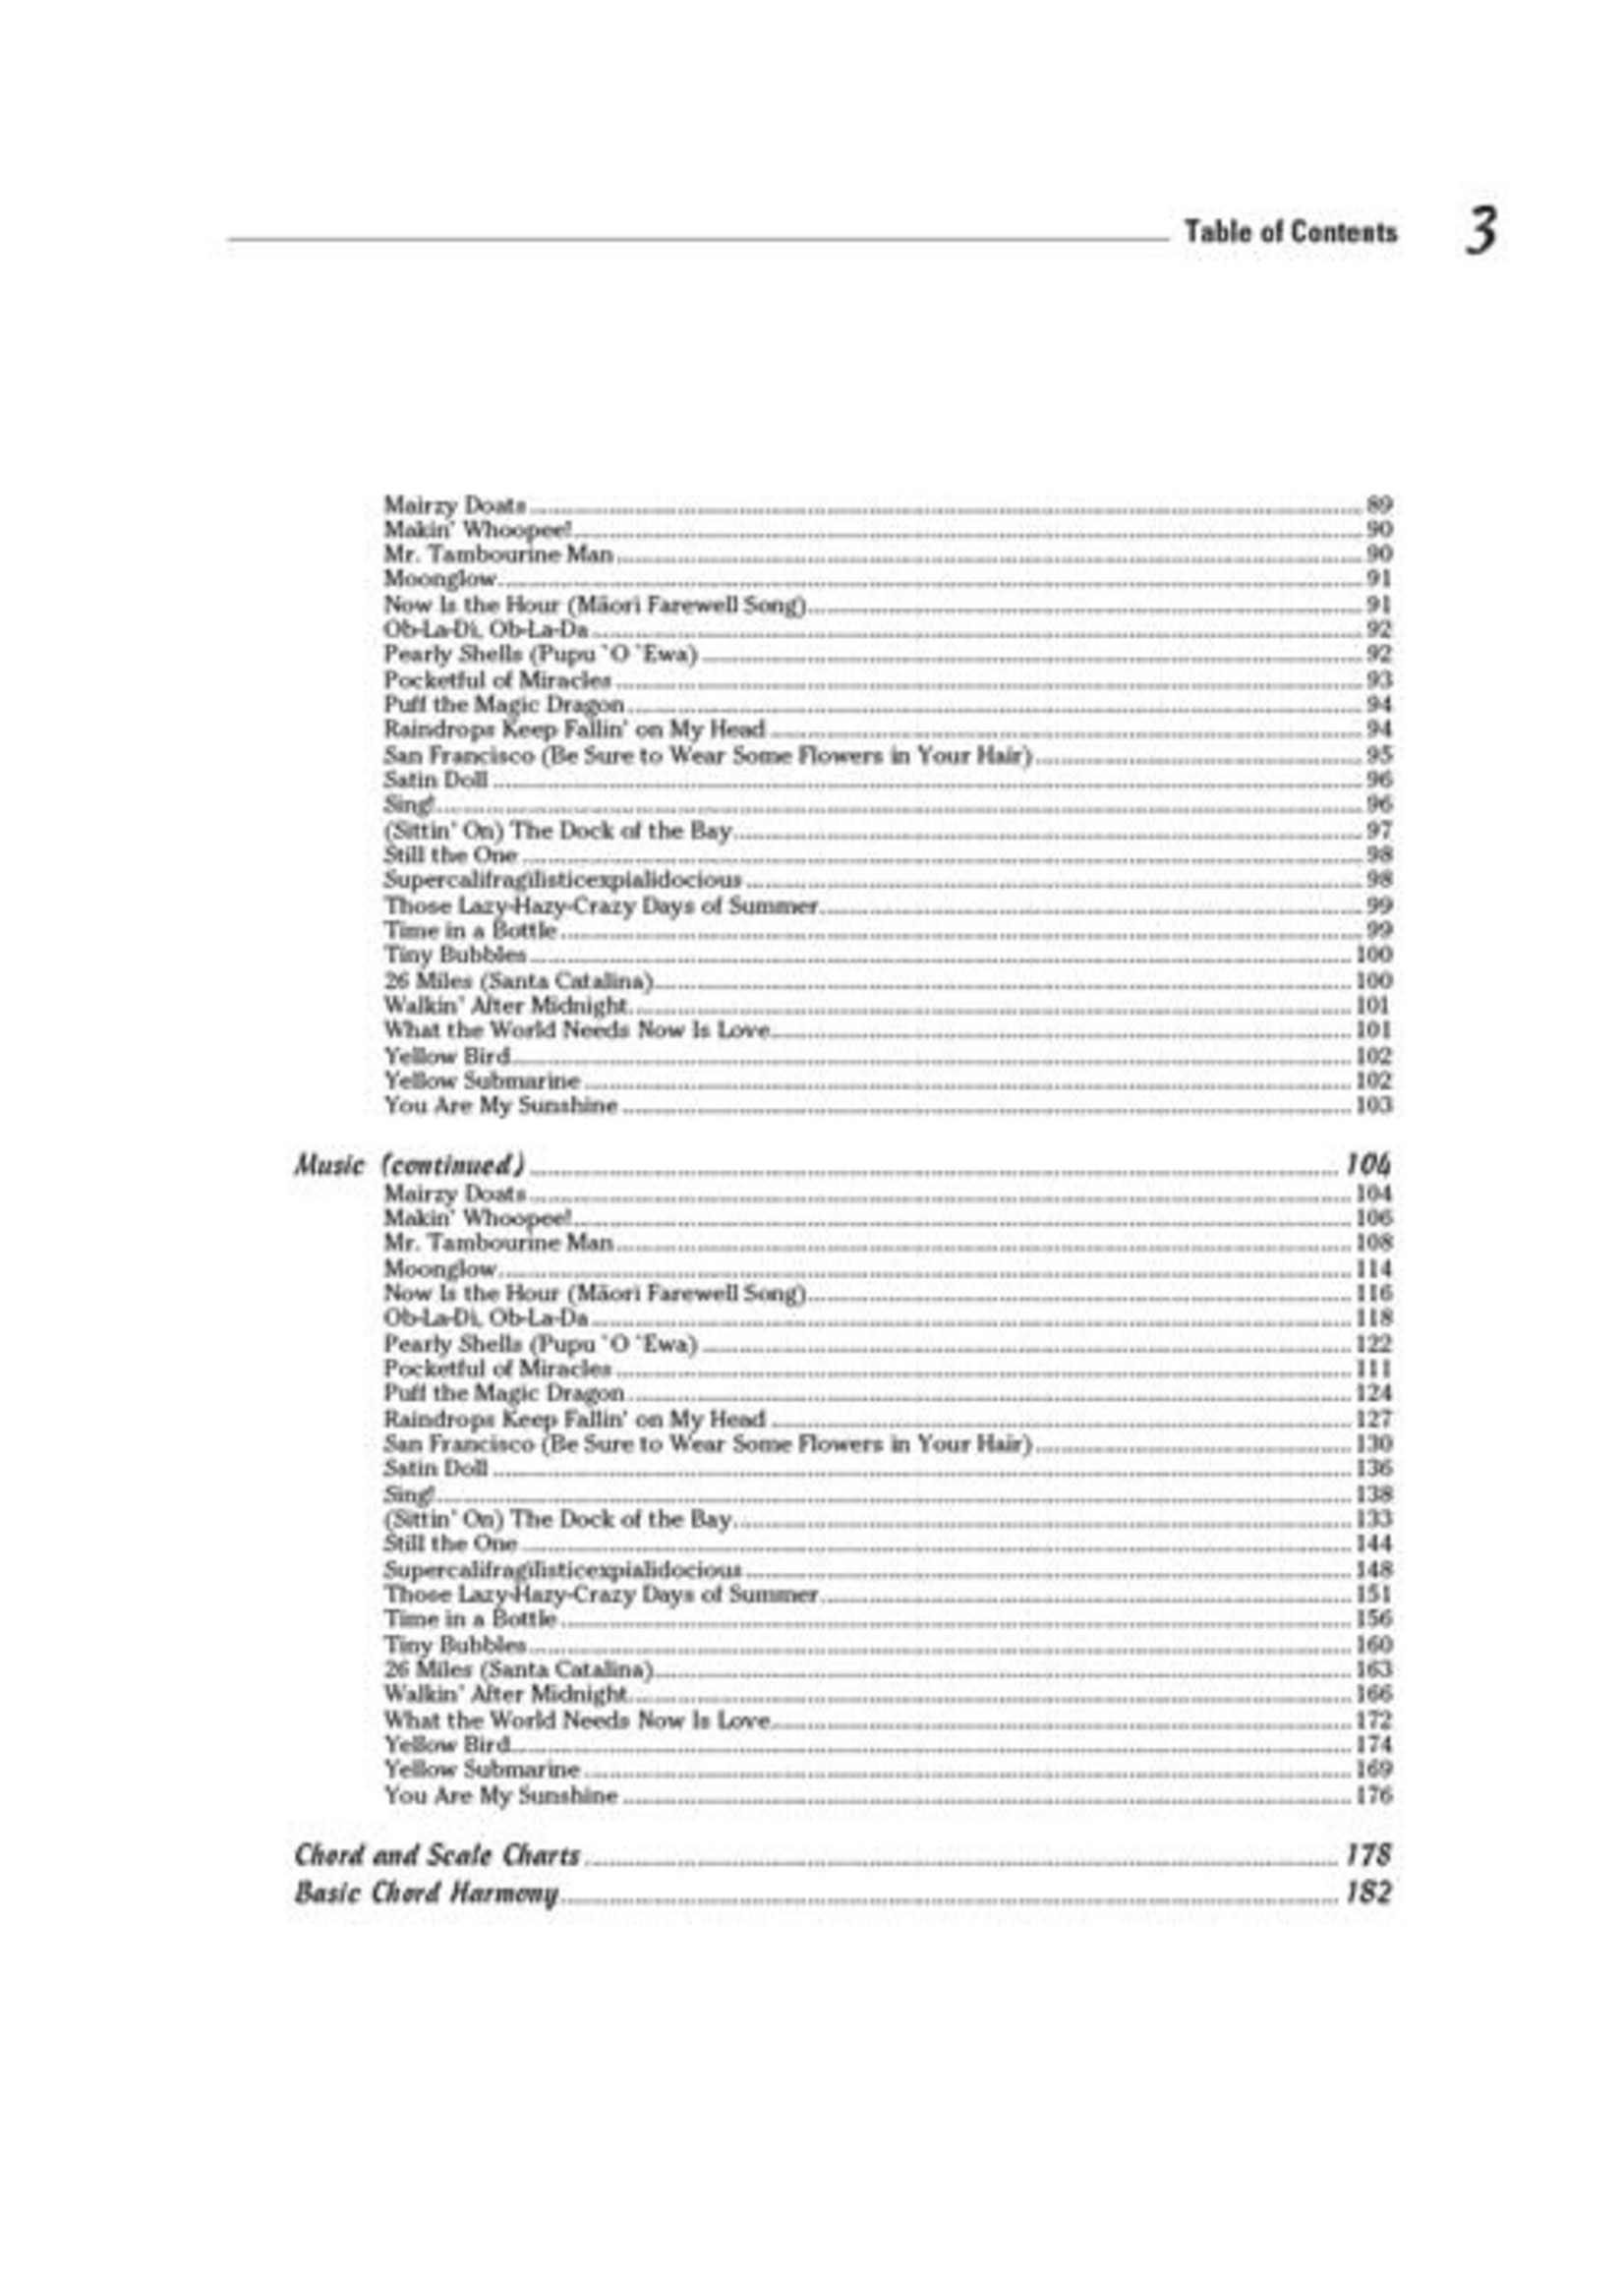 Hal Leonard Ukulele Songs for Dummies